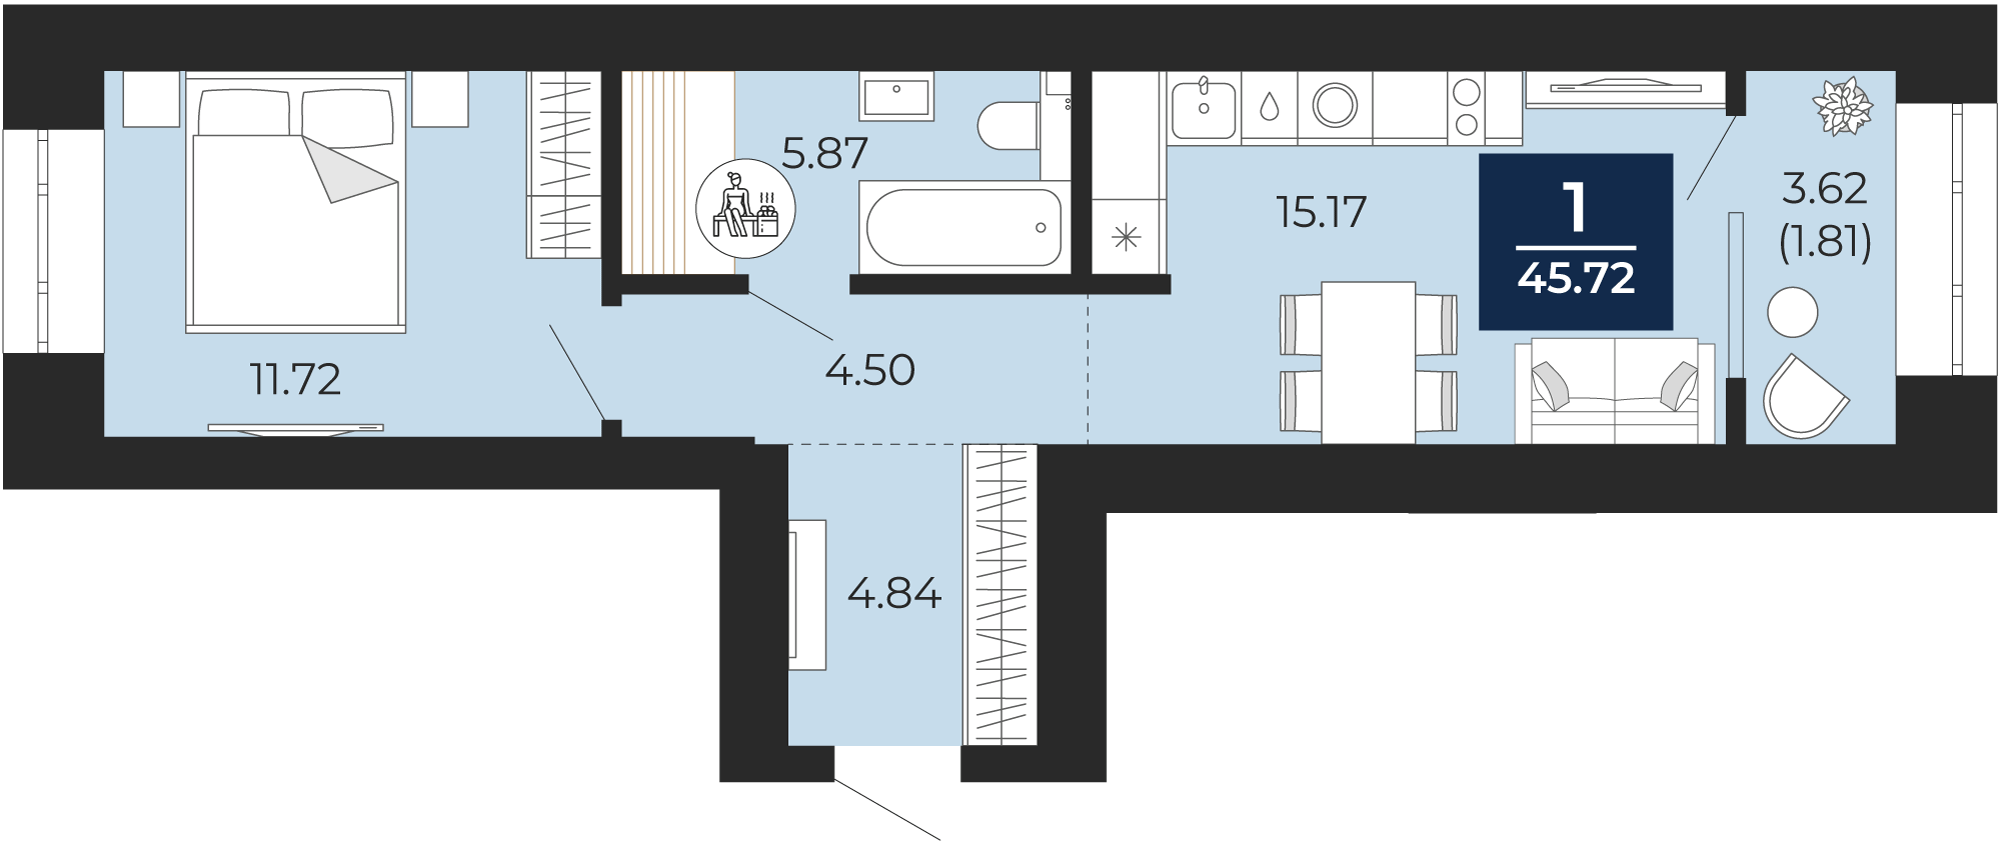 Квартира № 145, 1-комнатная, 45.72 кв. м, 4 этаж